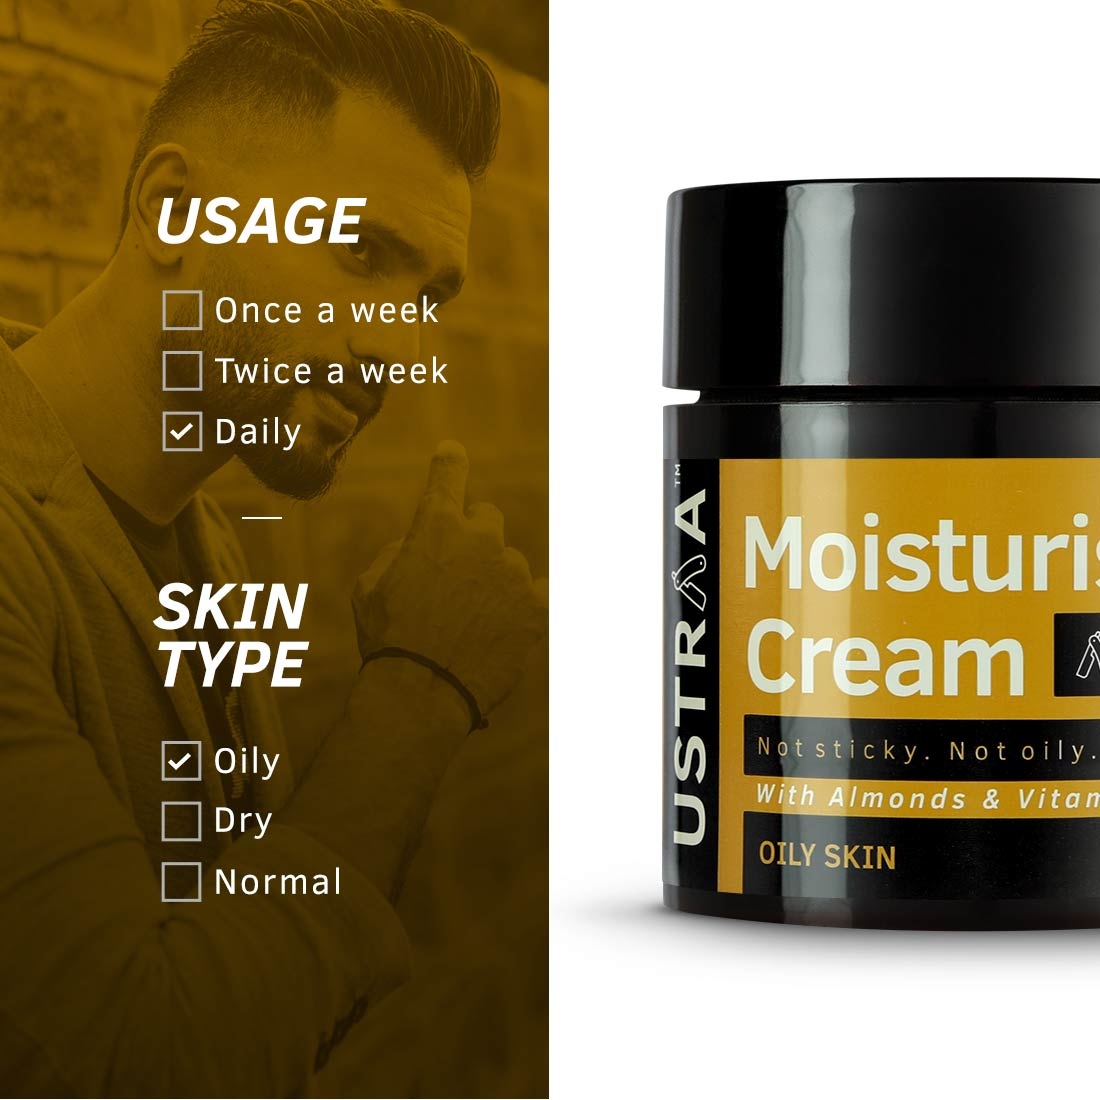 Ustraa | Moisturising Cream for Oily Skin - 100g 5